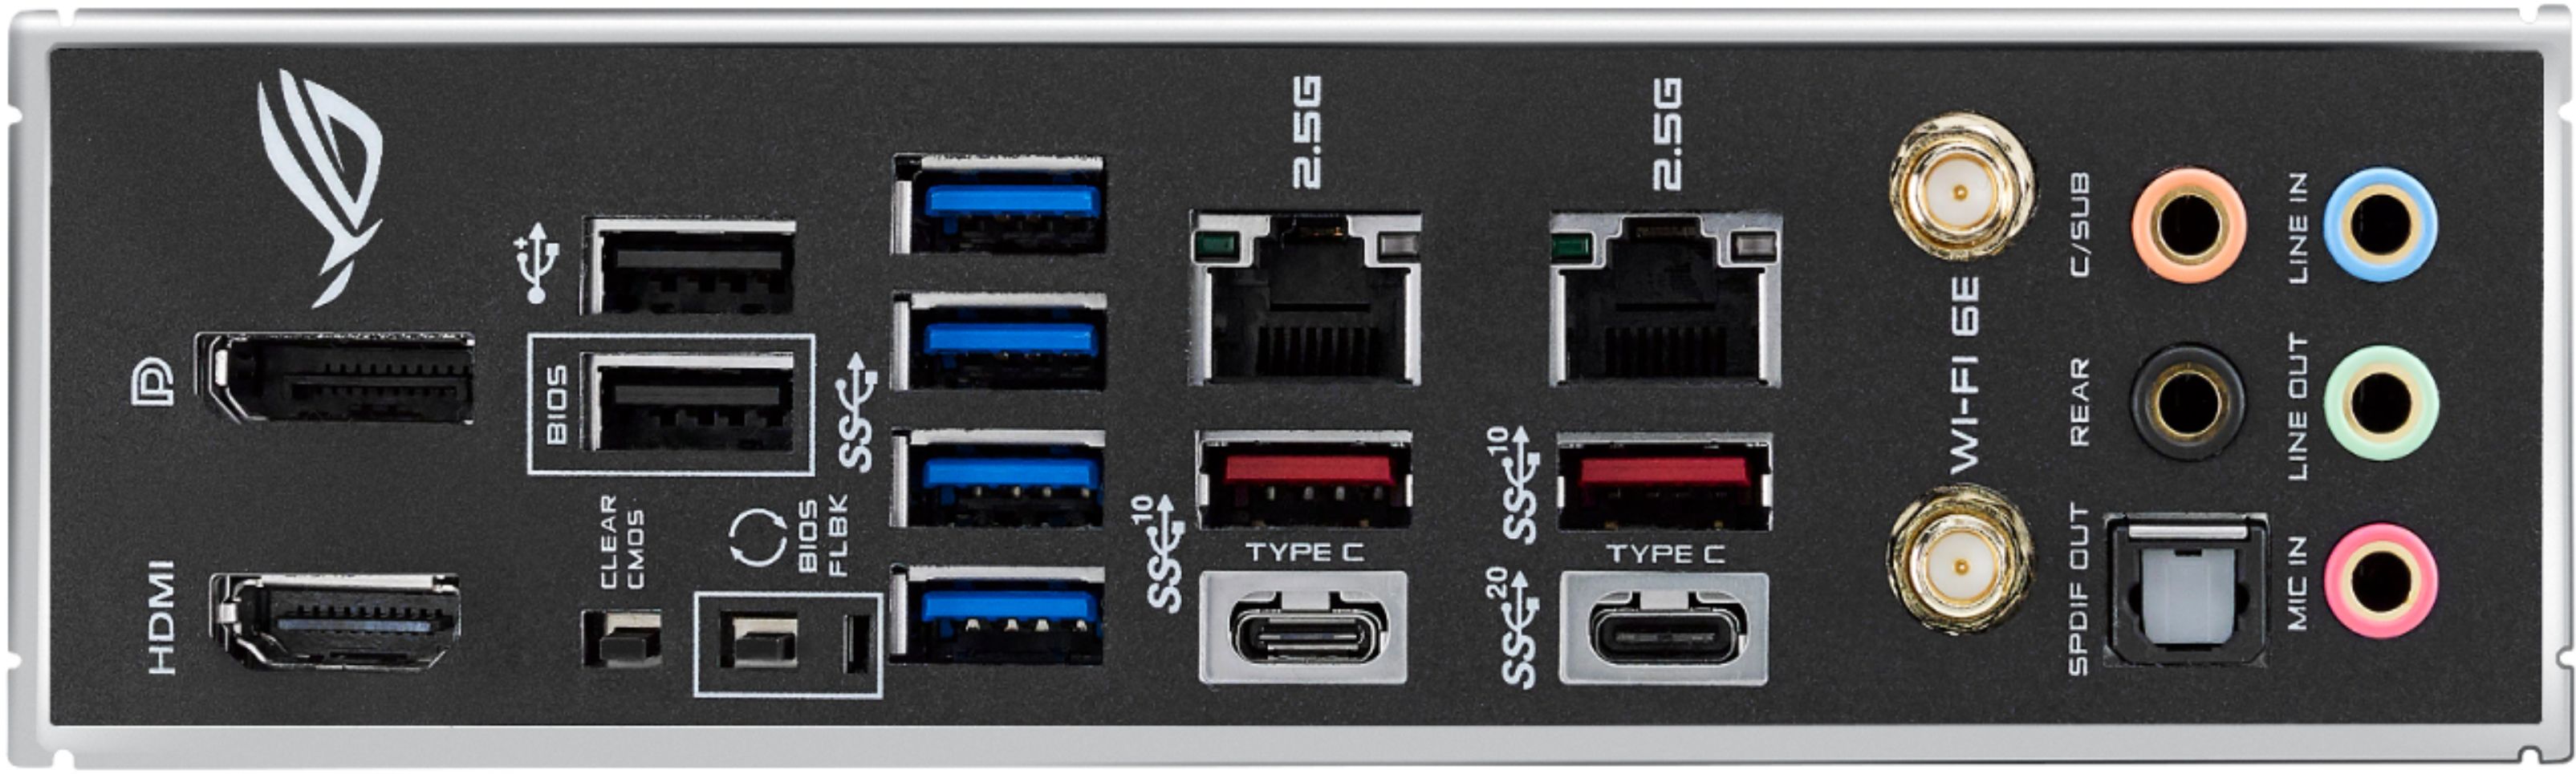 Best Buy: ASUS ROG STRIX Z590-E GAMING WIFI Socket LGA 1200 USB